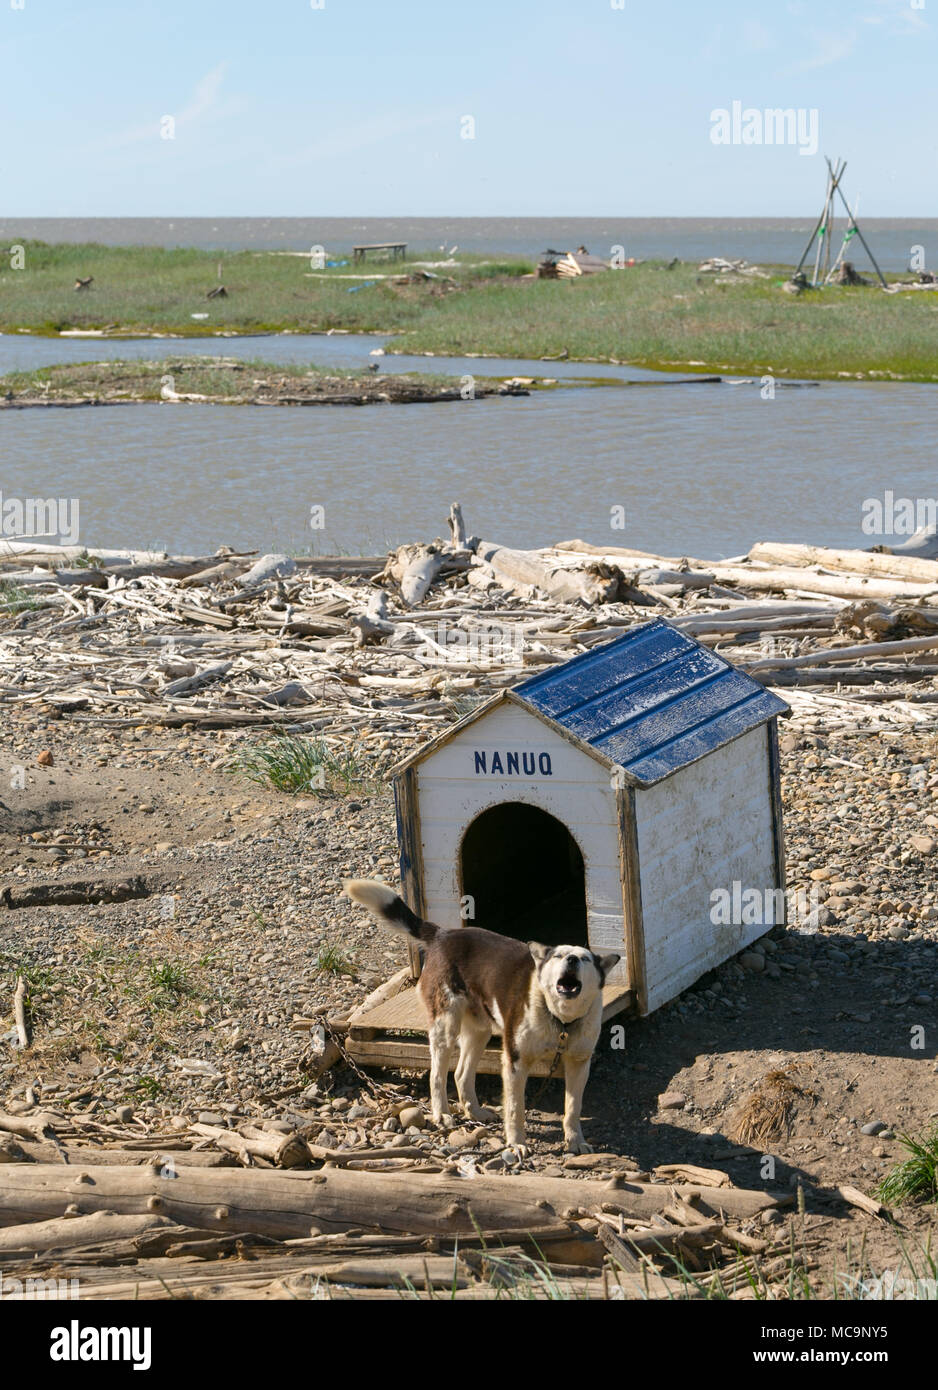 Chien d'aboiement canin enchaîné à sa maison de chien en bois, le long des rives de l'océan Arctique, Tuktoyaktuk, Territoires du Nord-Ouest, Canada. Banque D'Images